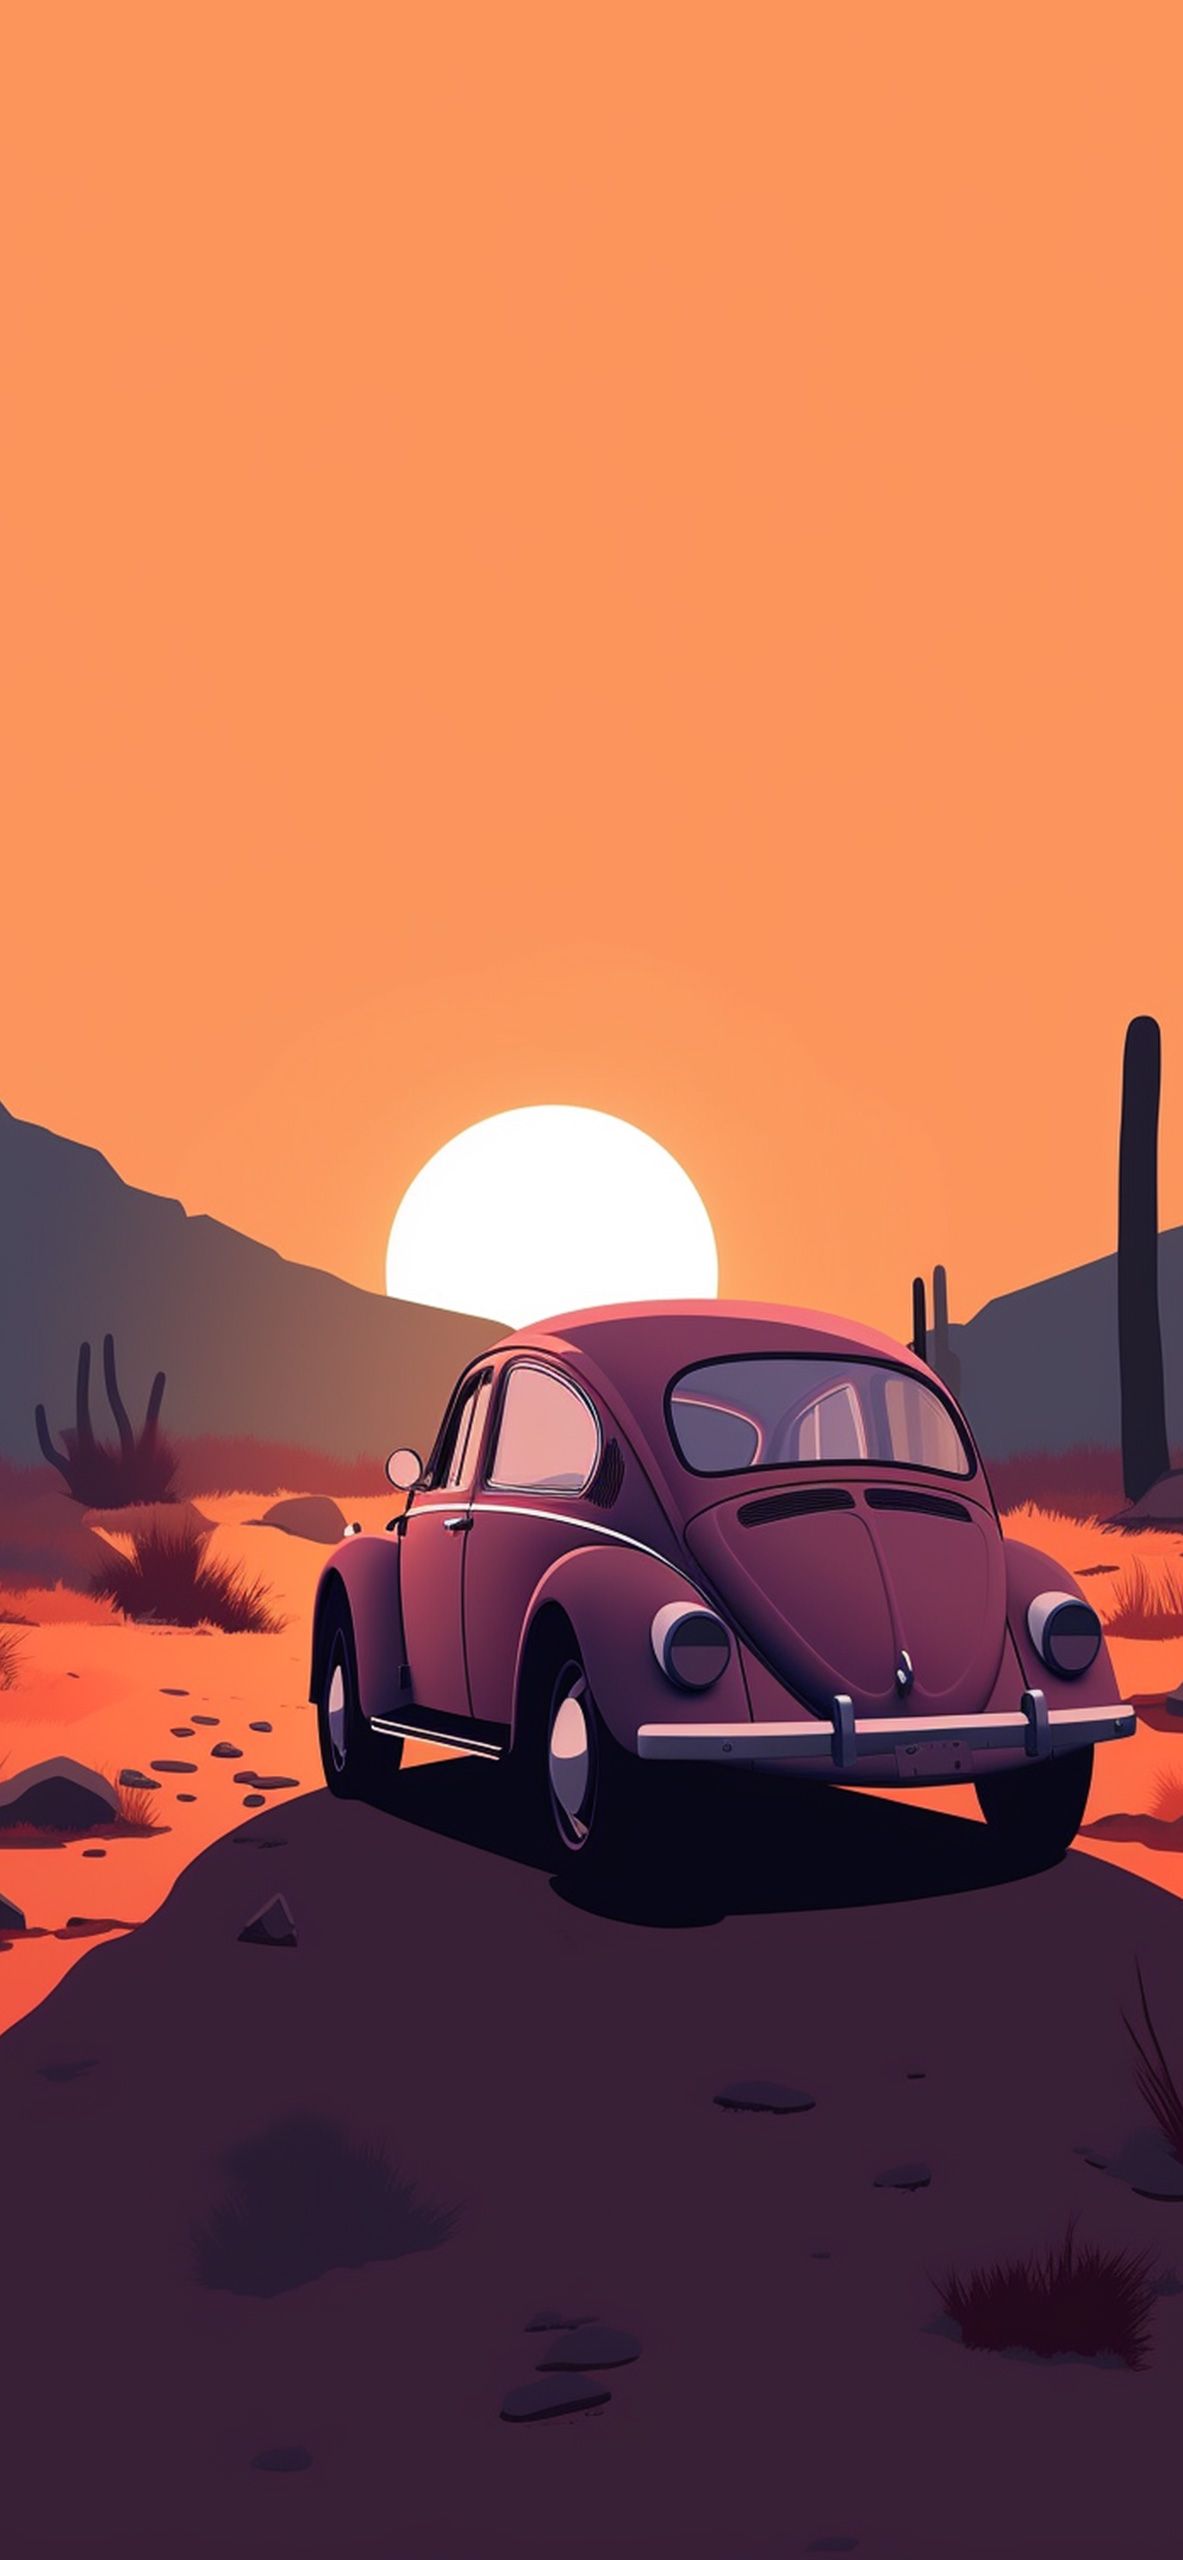  Volkswagen Hintergrundbild 1183x2560. Volkswagen Beetle & Sunset Wallpaper